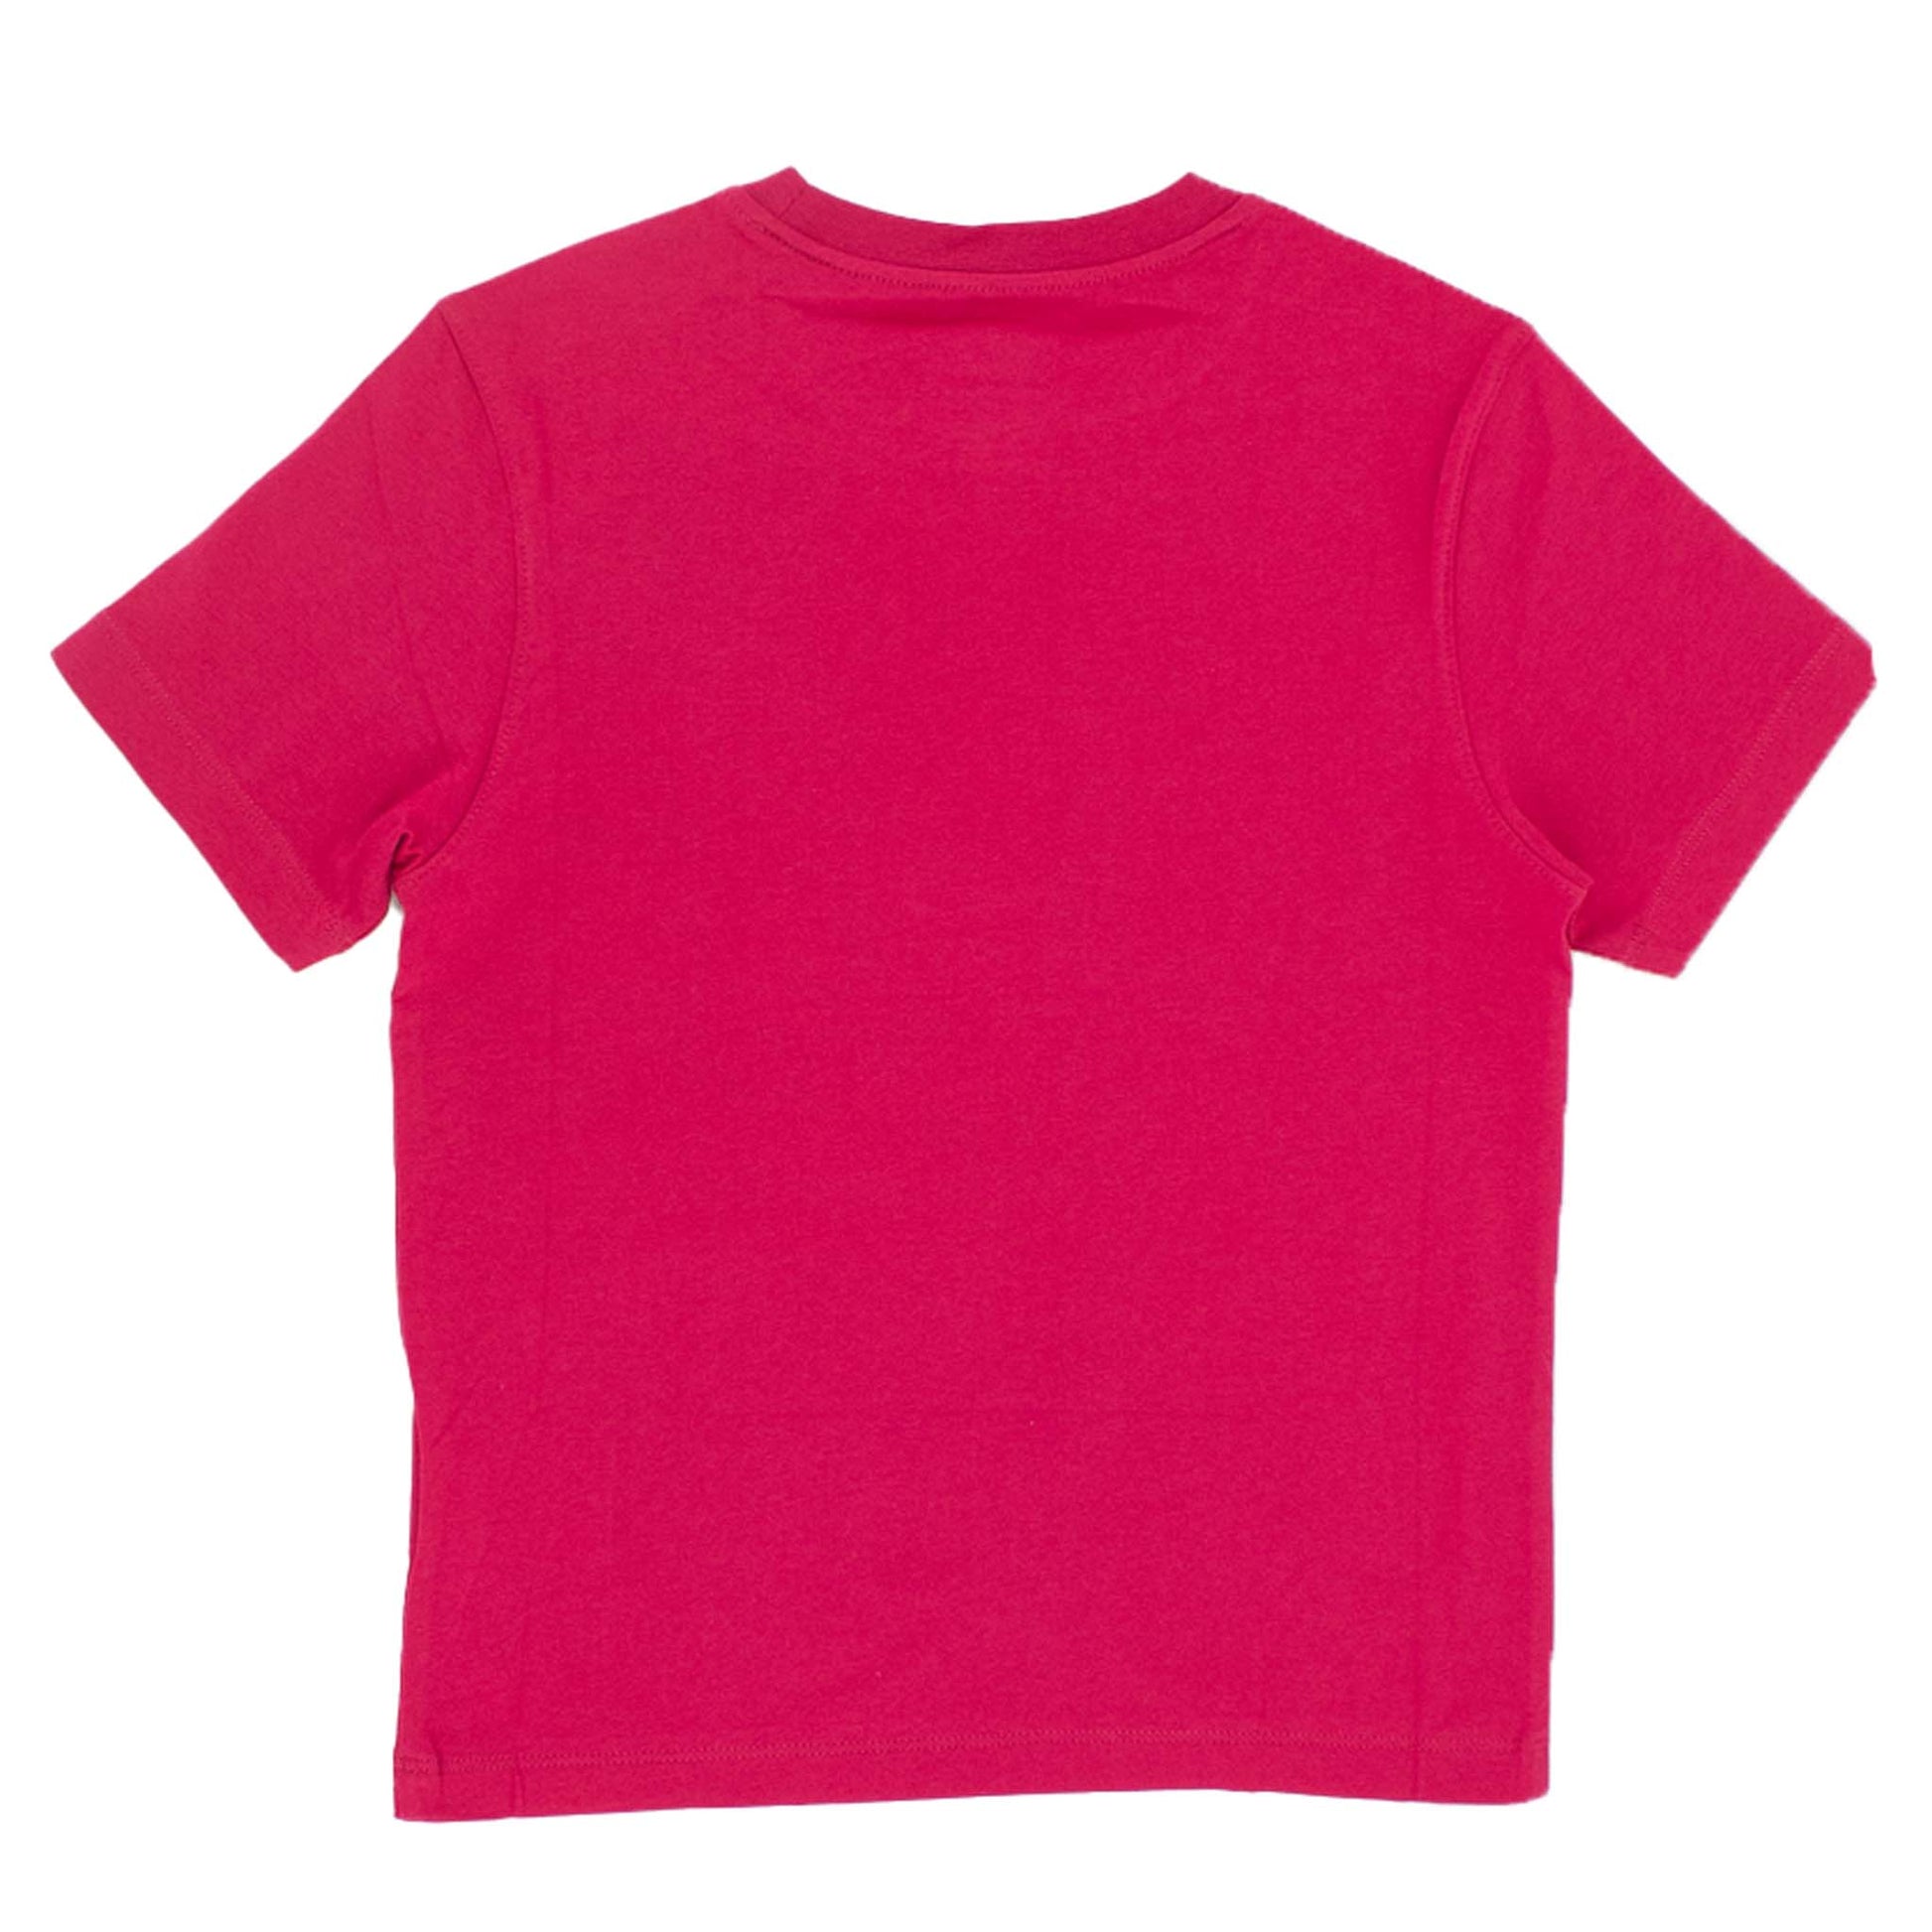 Jack Wolfskin Sunset Oc Kinder T-Shirt kurzarm Shirt 1605181-2081-2